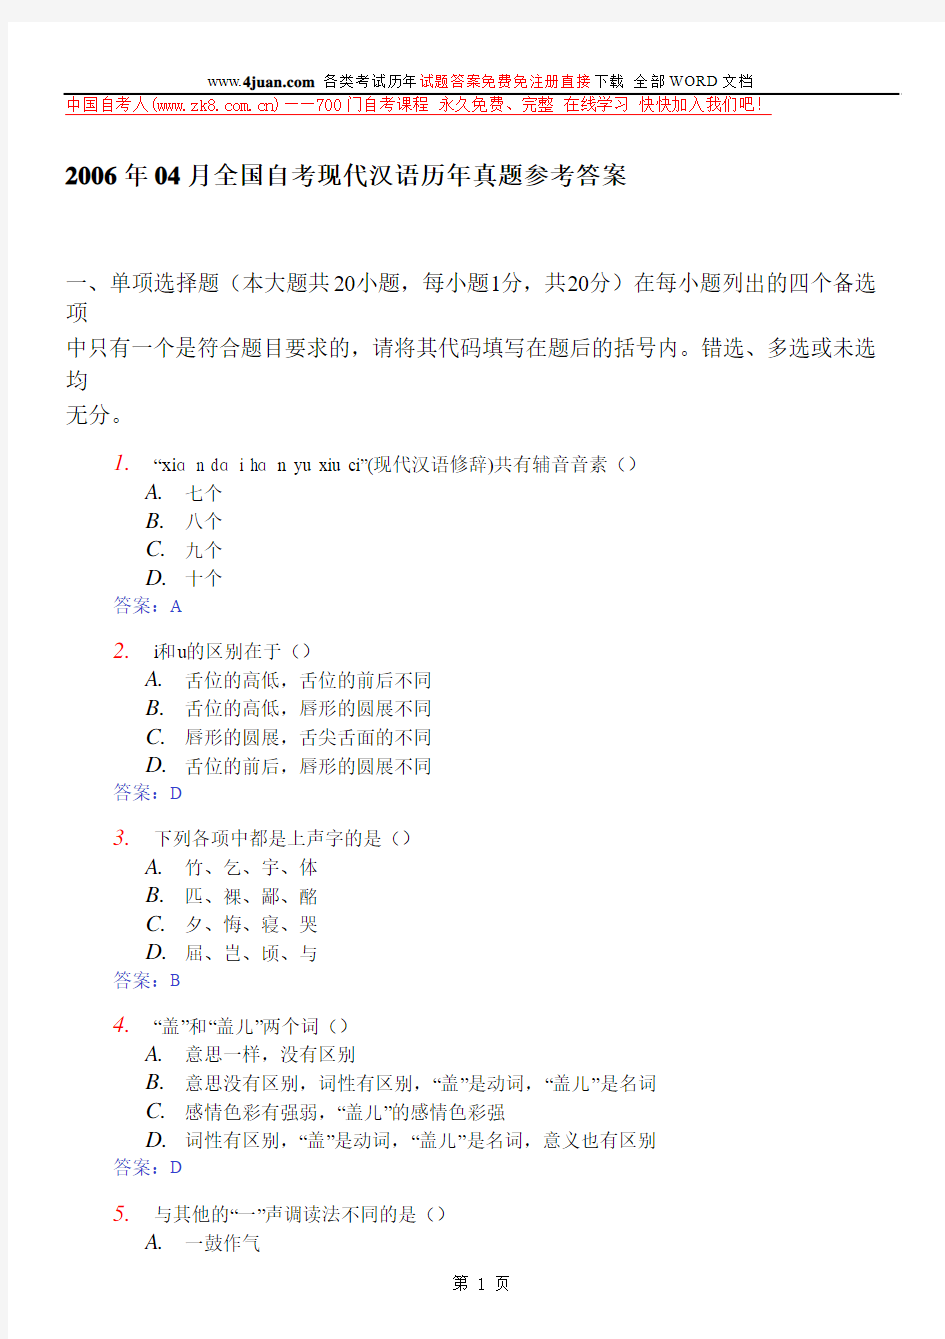 2006.4现代汉语答案试题答案